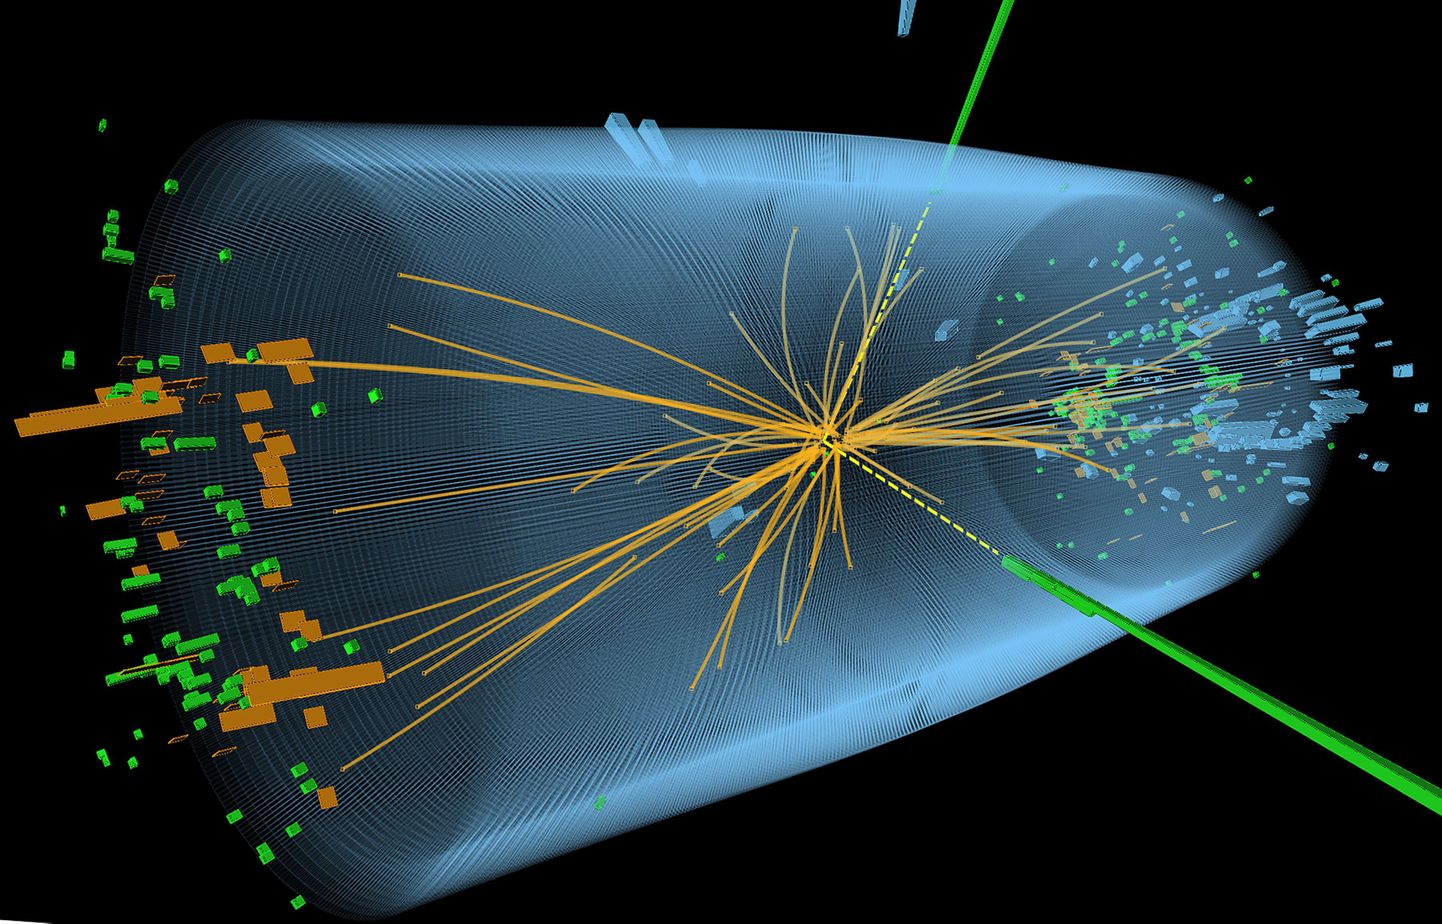 CERNI täna avaldatud pildil on näha Higgsi bosoni leidmiseks korraldatud CMS eksperimendi käigus tekkinud osakeste põrkumise jäljed.